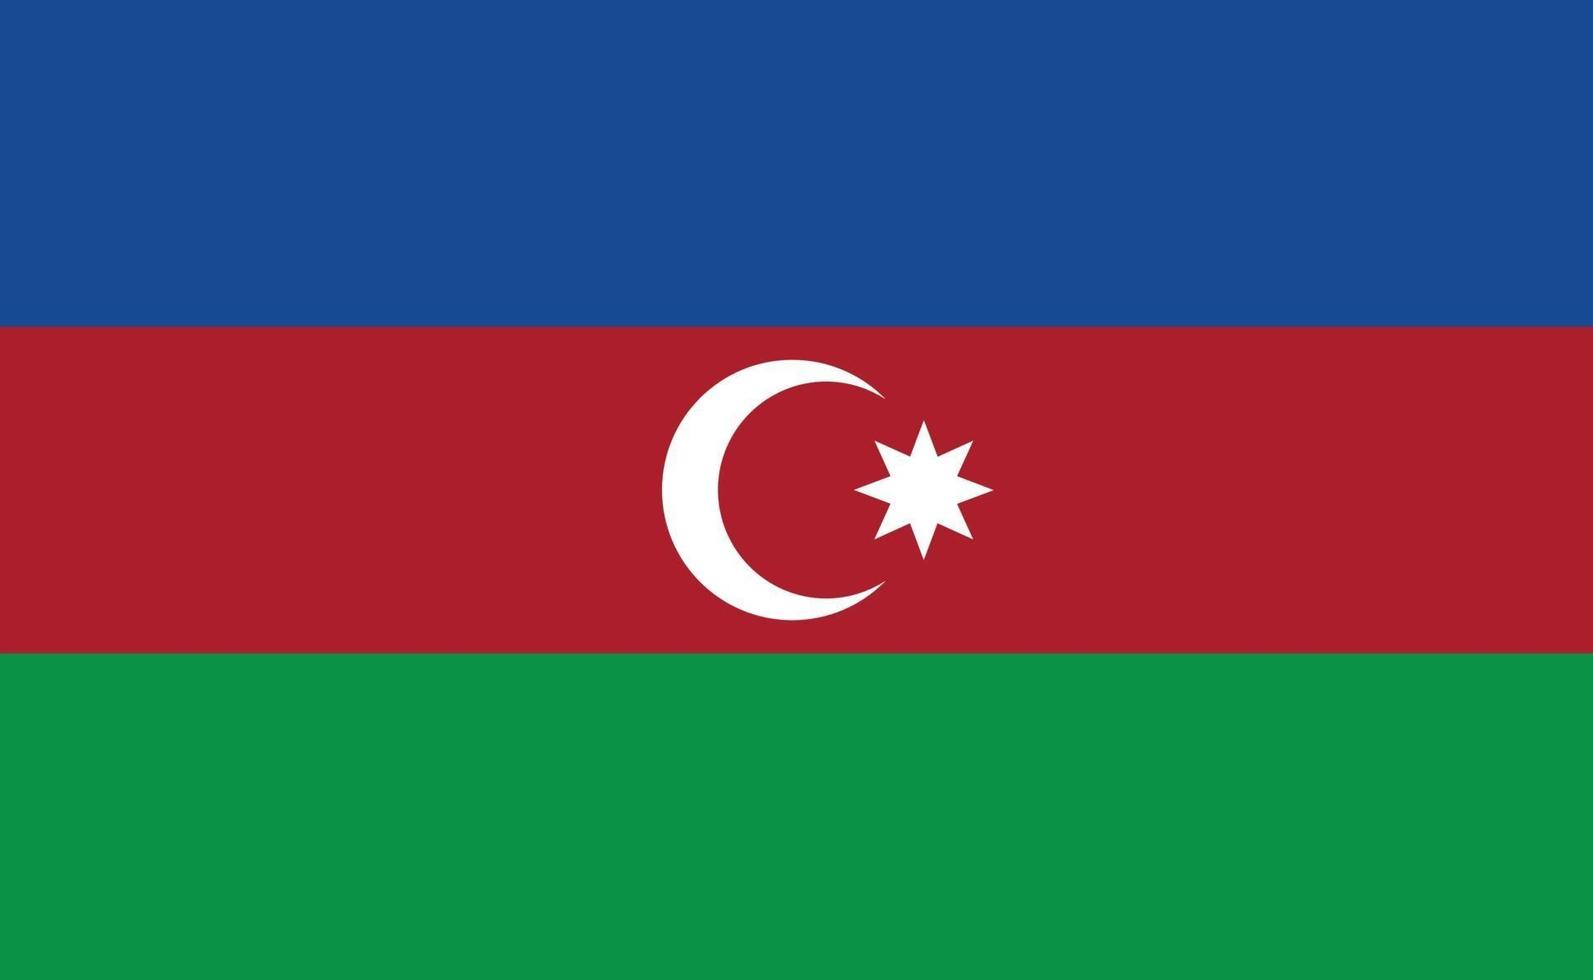 bandeira nacional do azerbaijão em proporções exatas - ilustração vetorial vetor